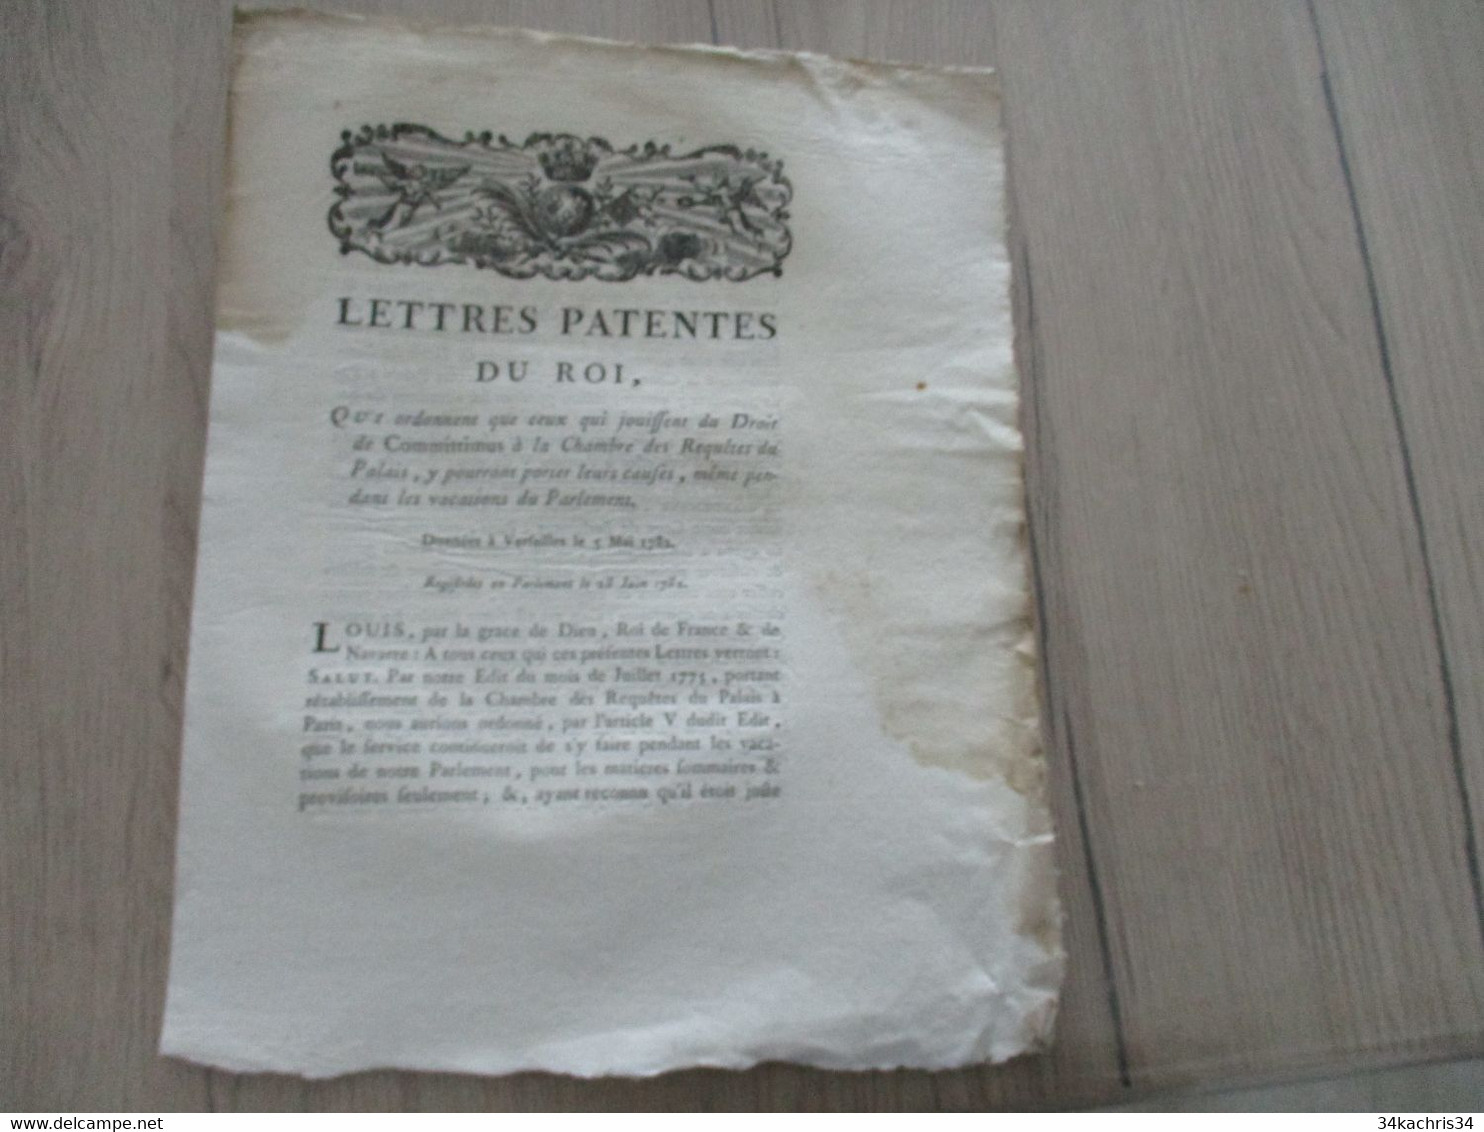 Lettres Patentes Du Roi 05/05/1782 Qui Ordonne Que Ceux Qui Jouissent Du Droit De Committimus.... Mouillures - Gesetze & Erlasse